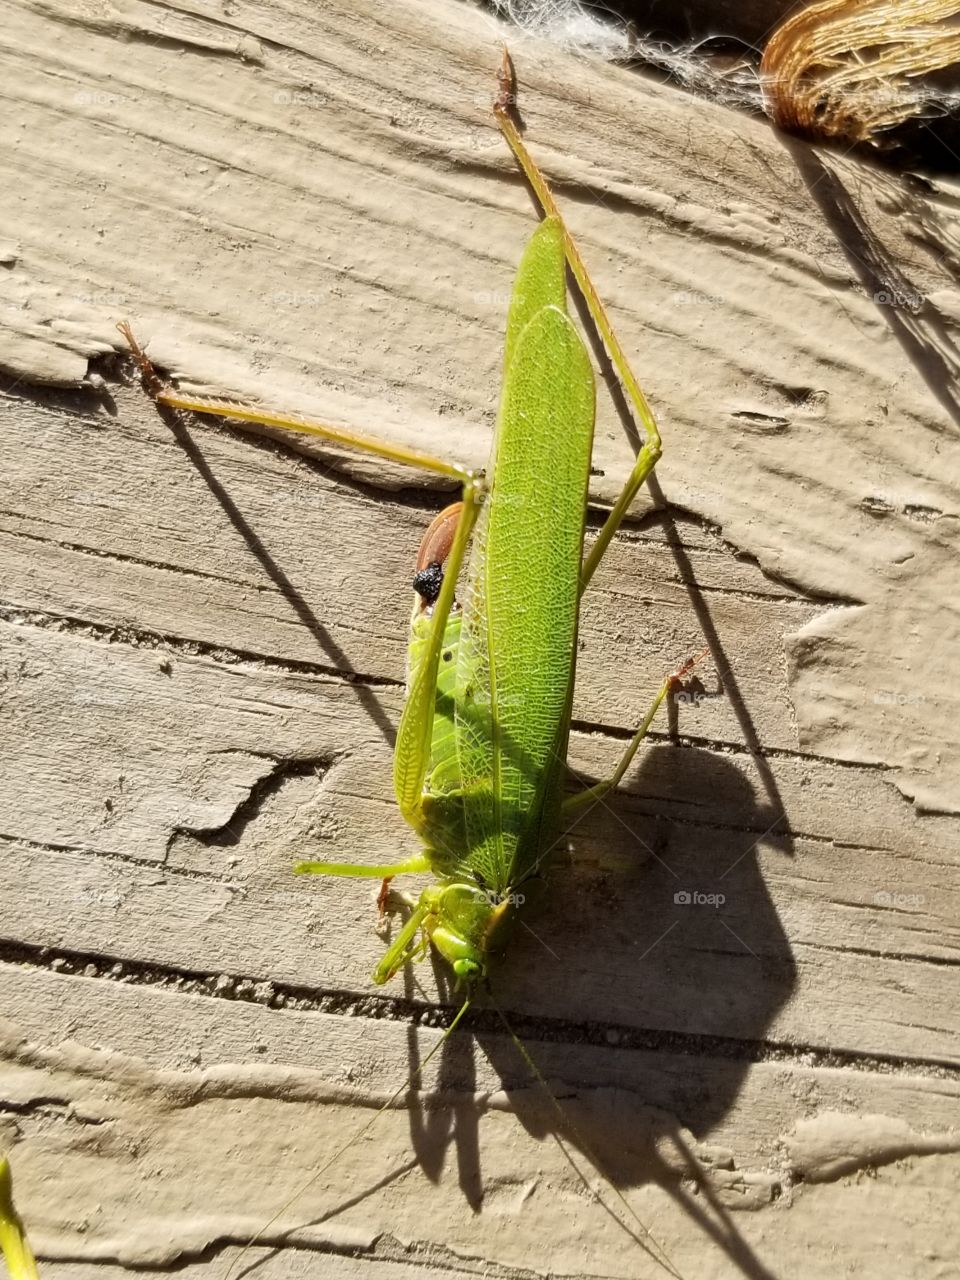 Grasshopper chillin on the back porch.